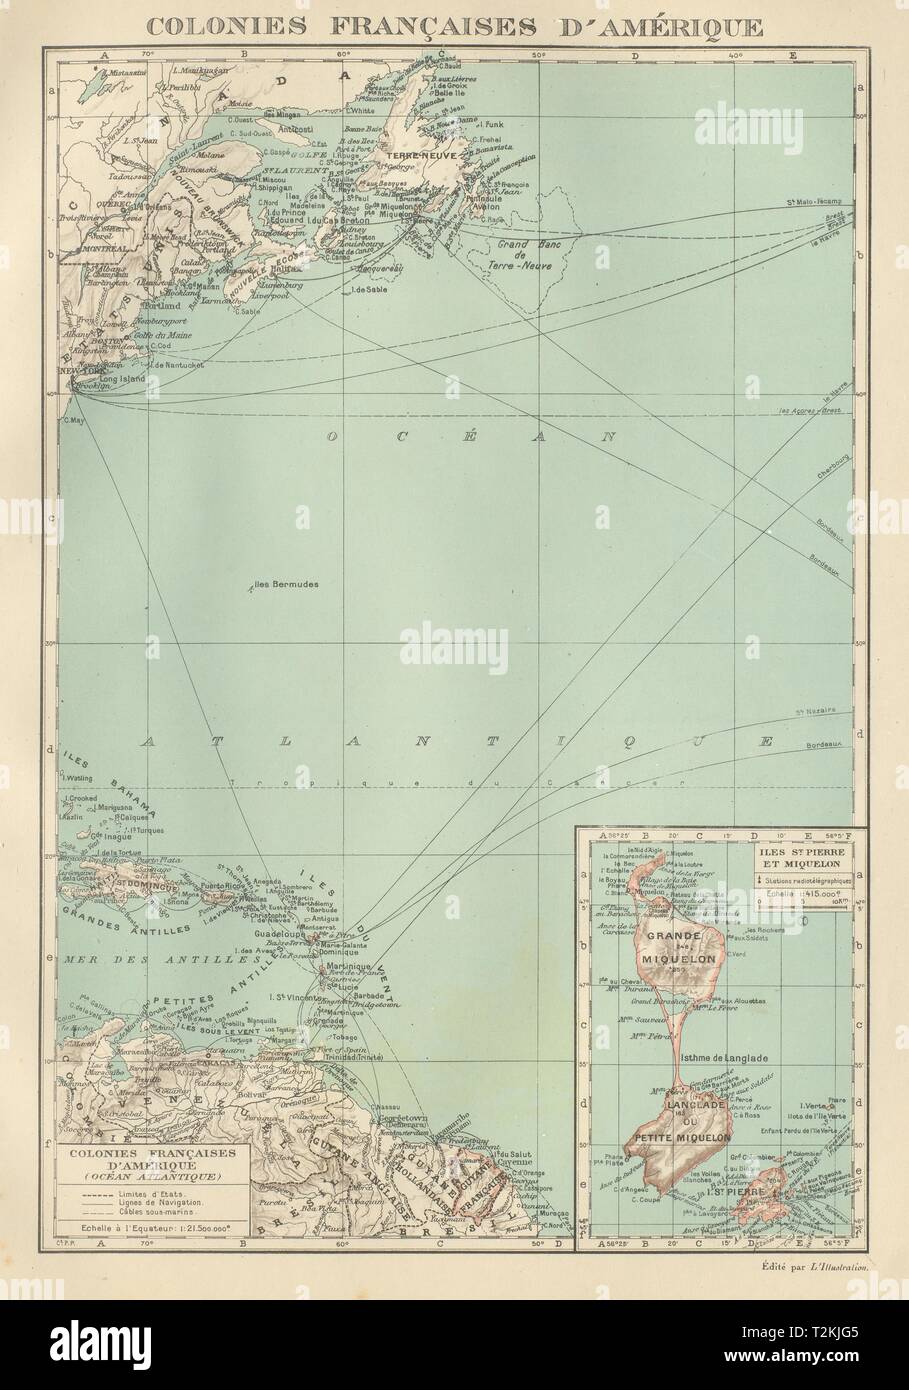 FRENCH AMERICAS. Colonies Françaises d' Amerique. St-Pierre et Miquelon 1931 map Stock Photo